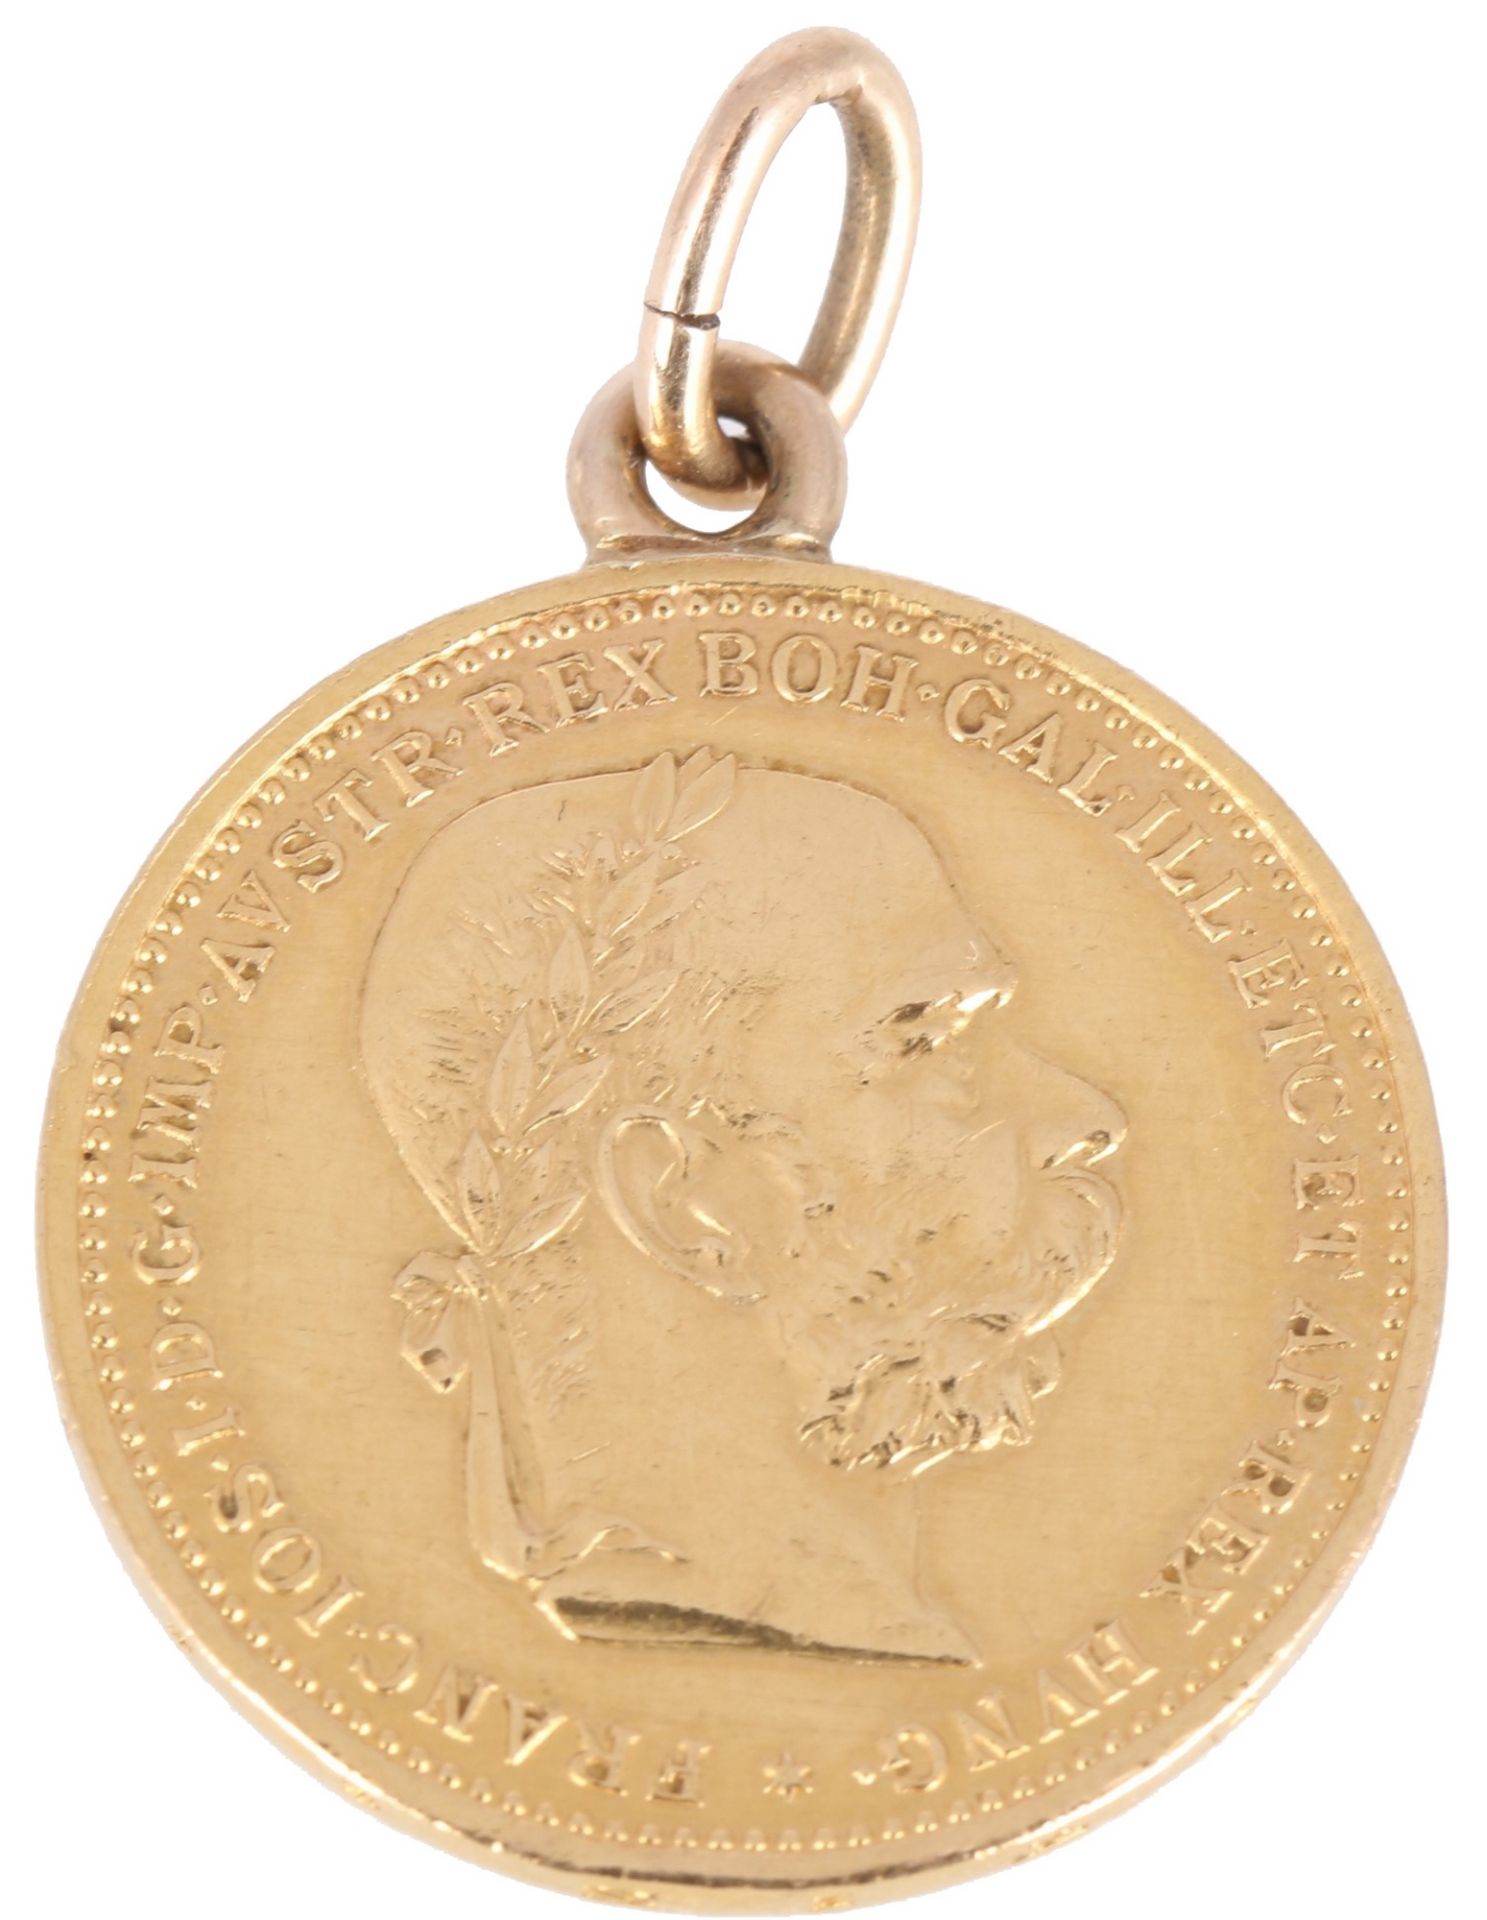 Goldmünze Österreich 20 Kronen 1894 Kaiser Franz Joseph I., austrian gold coin as pendant,